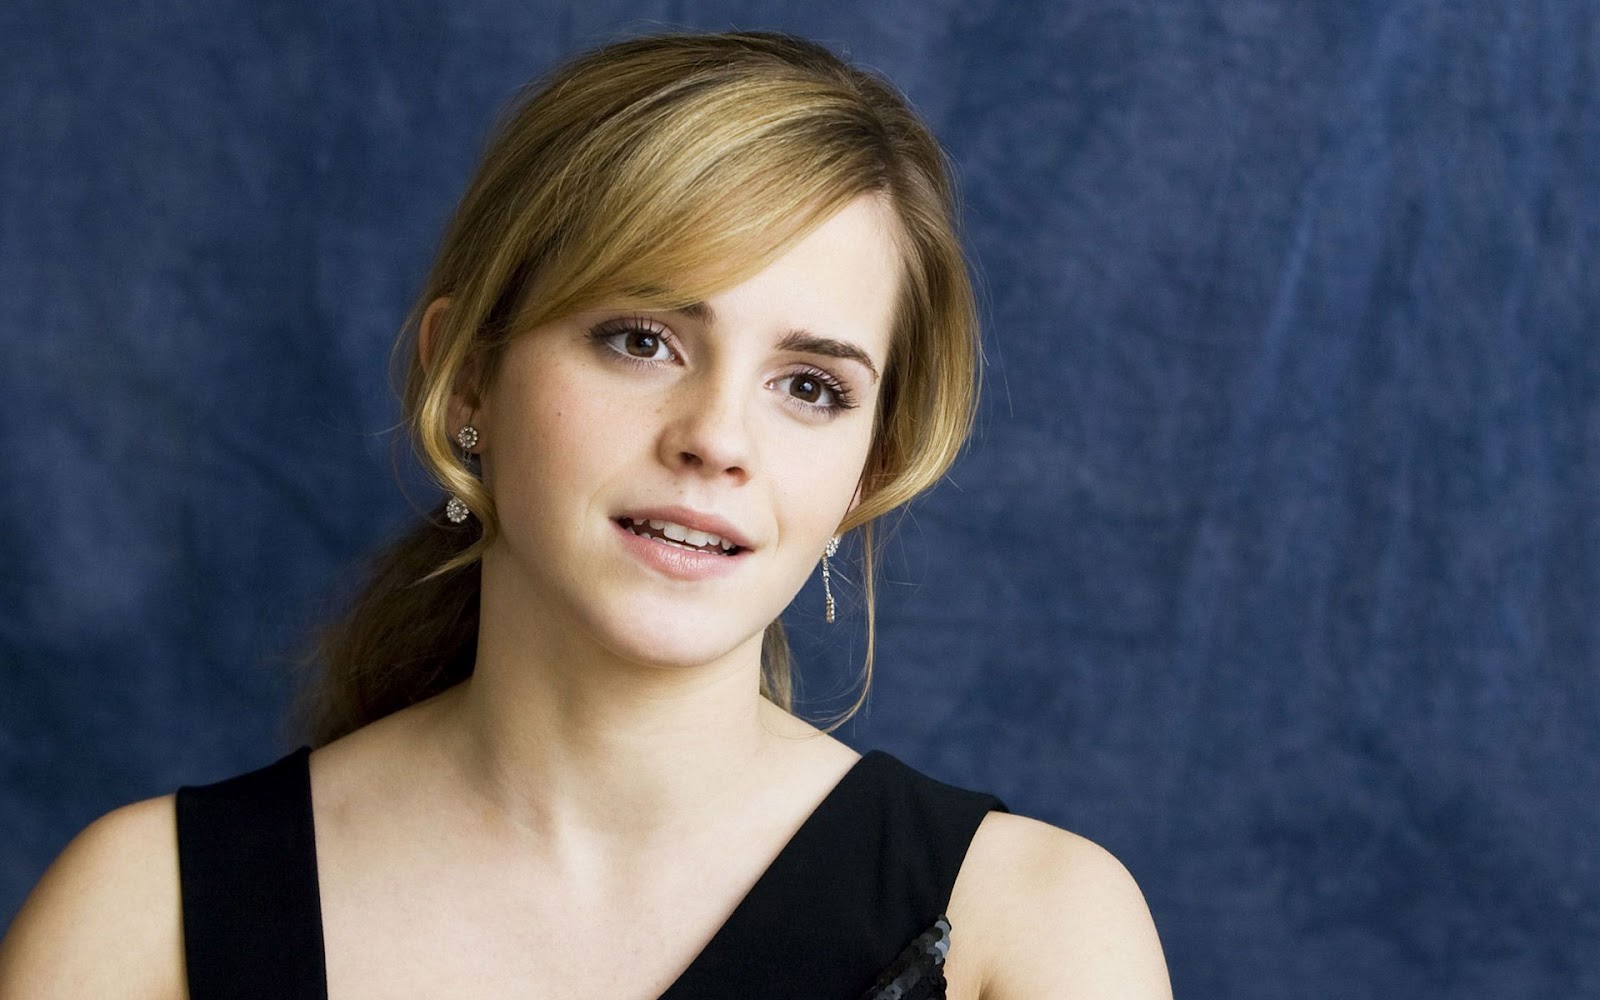 HD Wallpaper 1080p Of Emma Watson